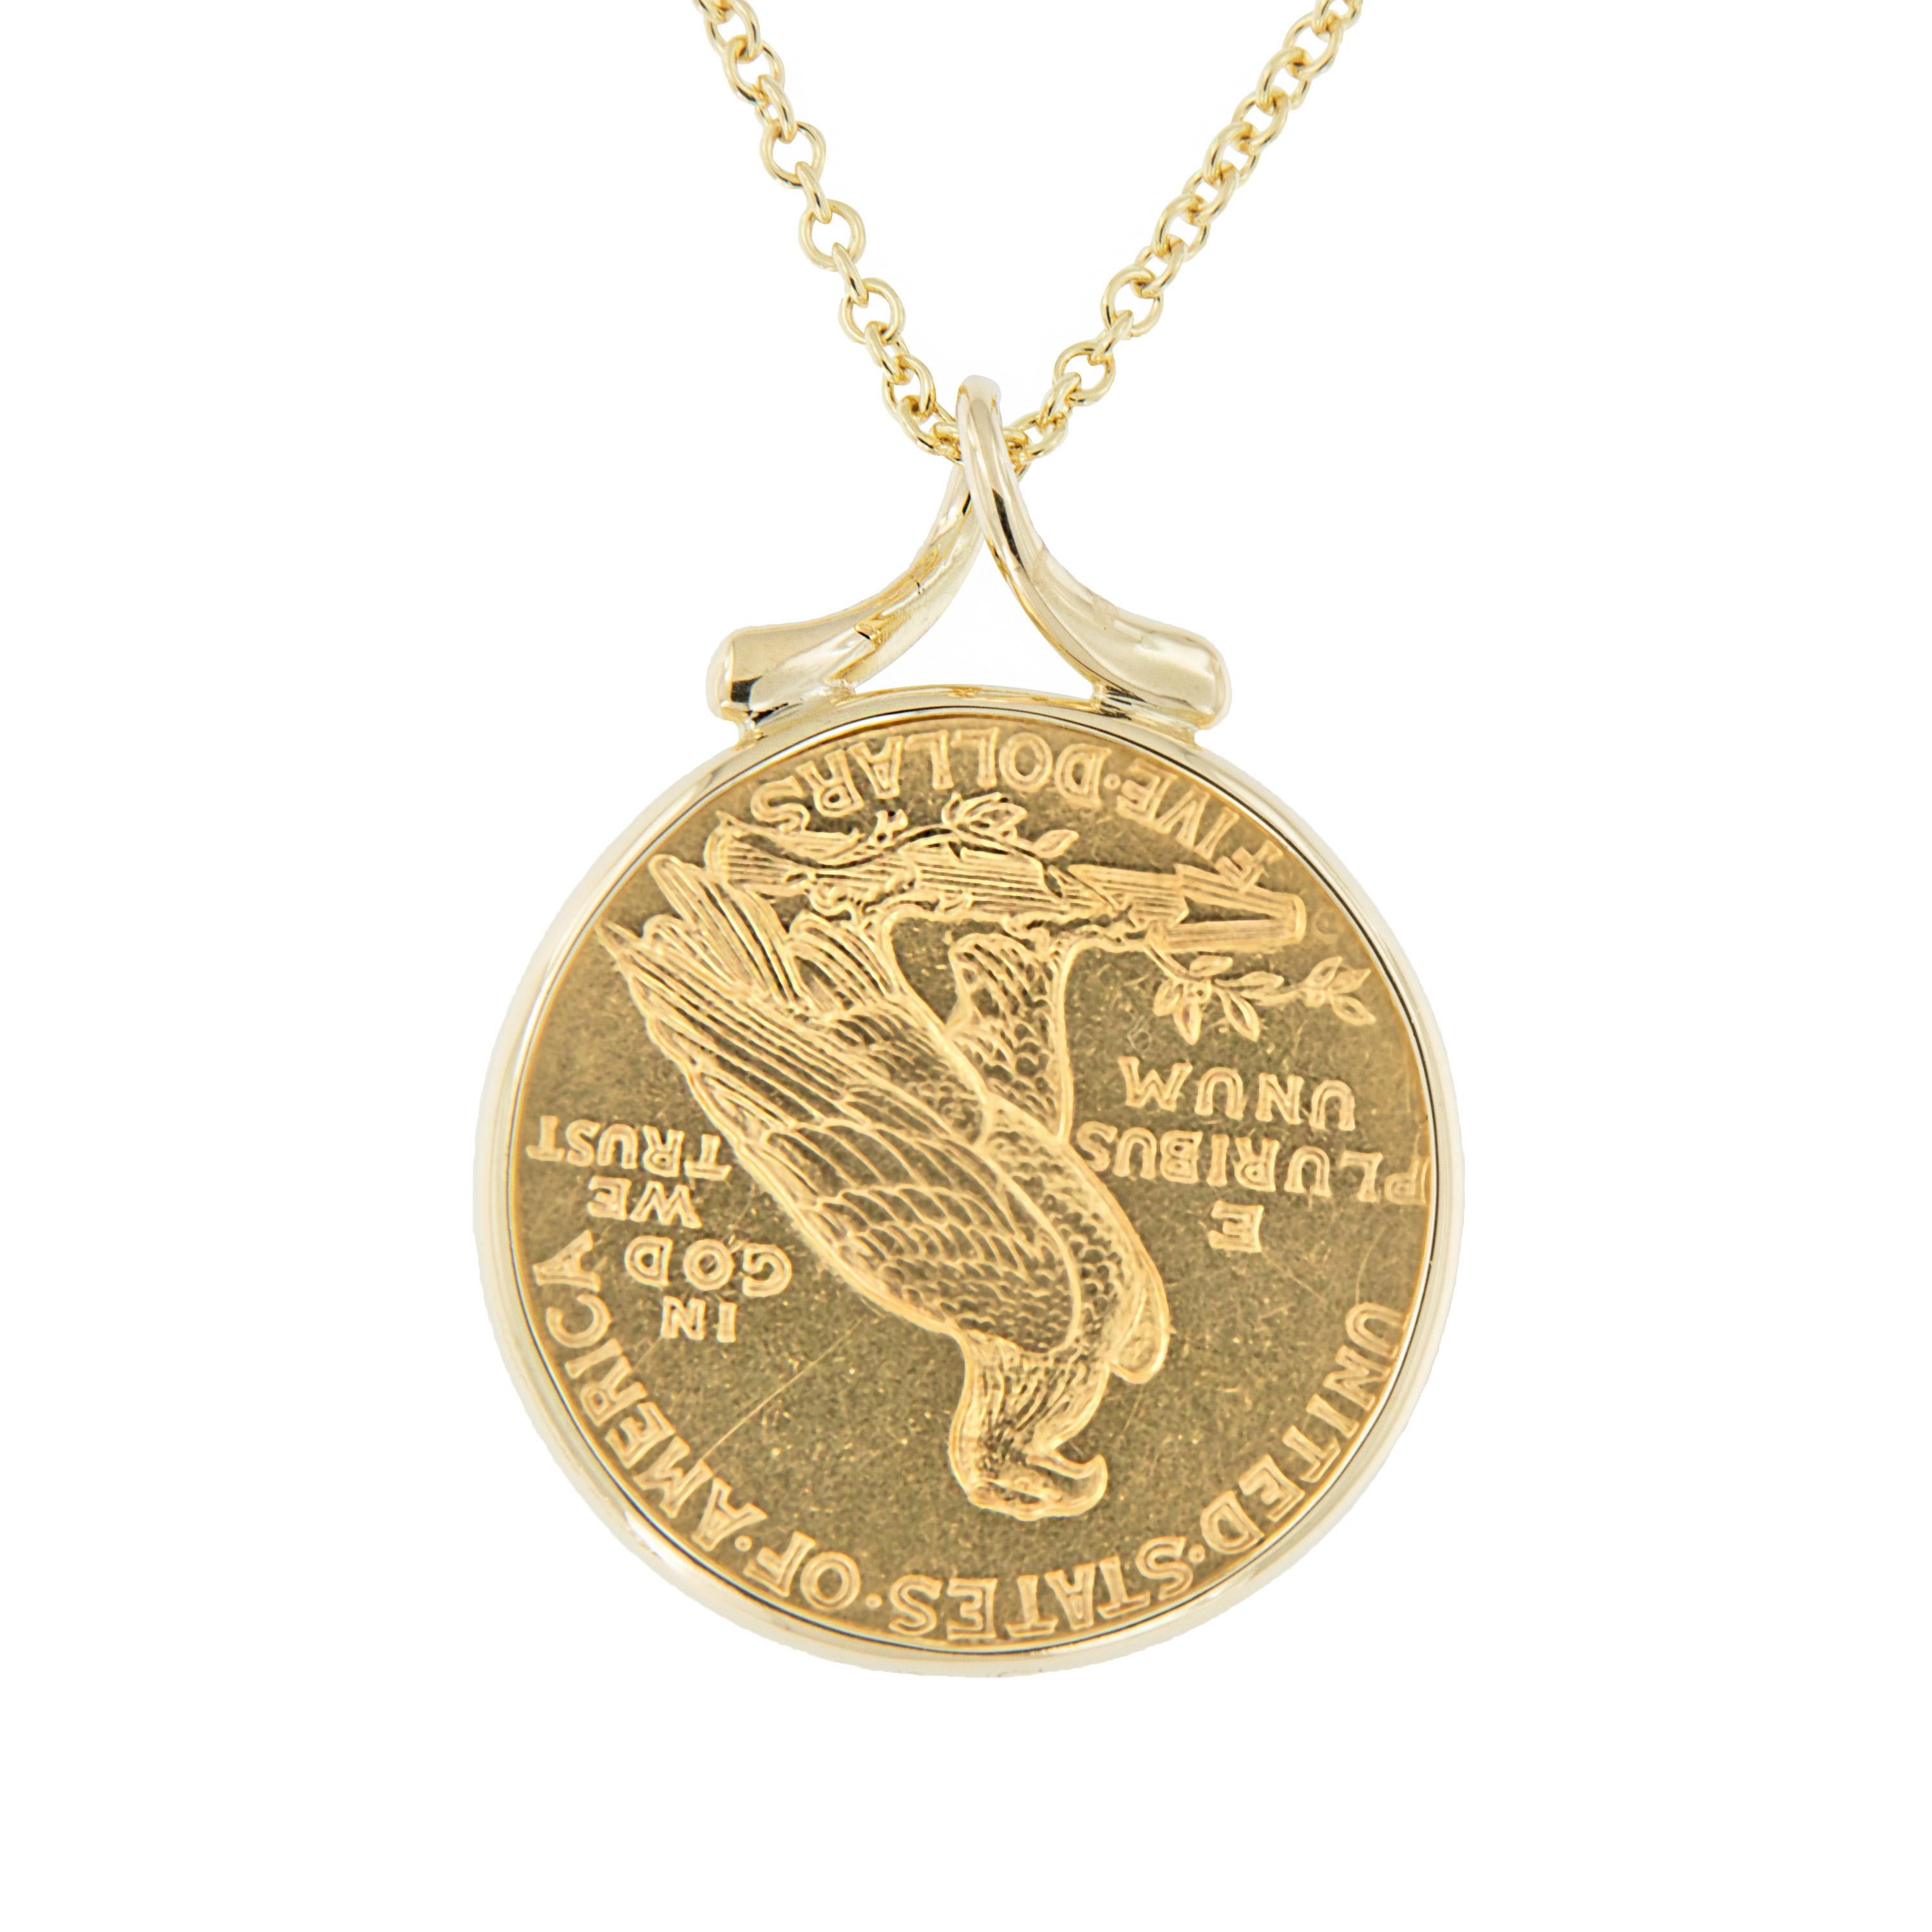 Profitez d'un morceau de l'histoire des pièces d'or américaines ! Cette pièce de 1925 d'un quart d'aigle à tête d'indien de 2,50 dollars est encadrée d'or jaune 18 carats et suspendue à une chaîne de 16 pouces par une attache en forme de ruban. Le